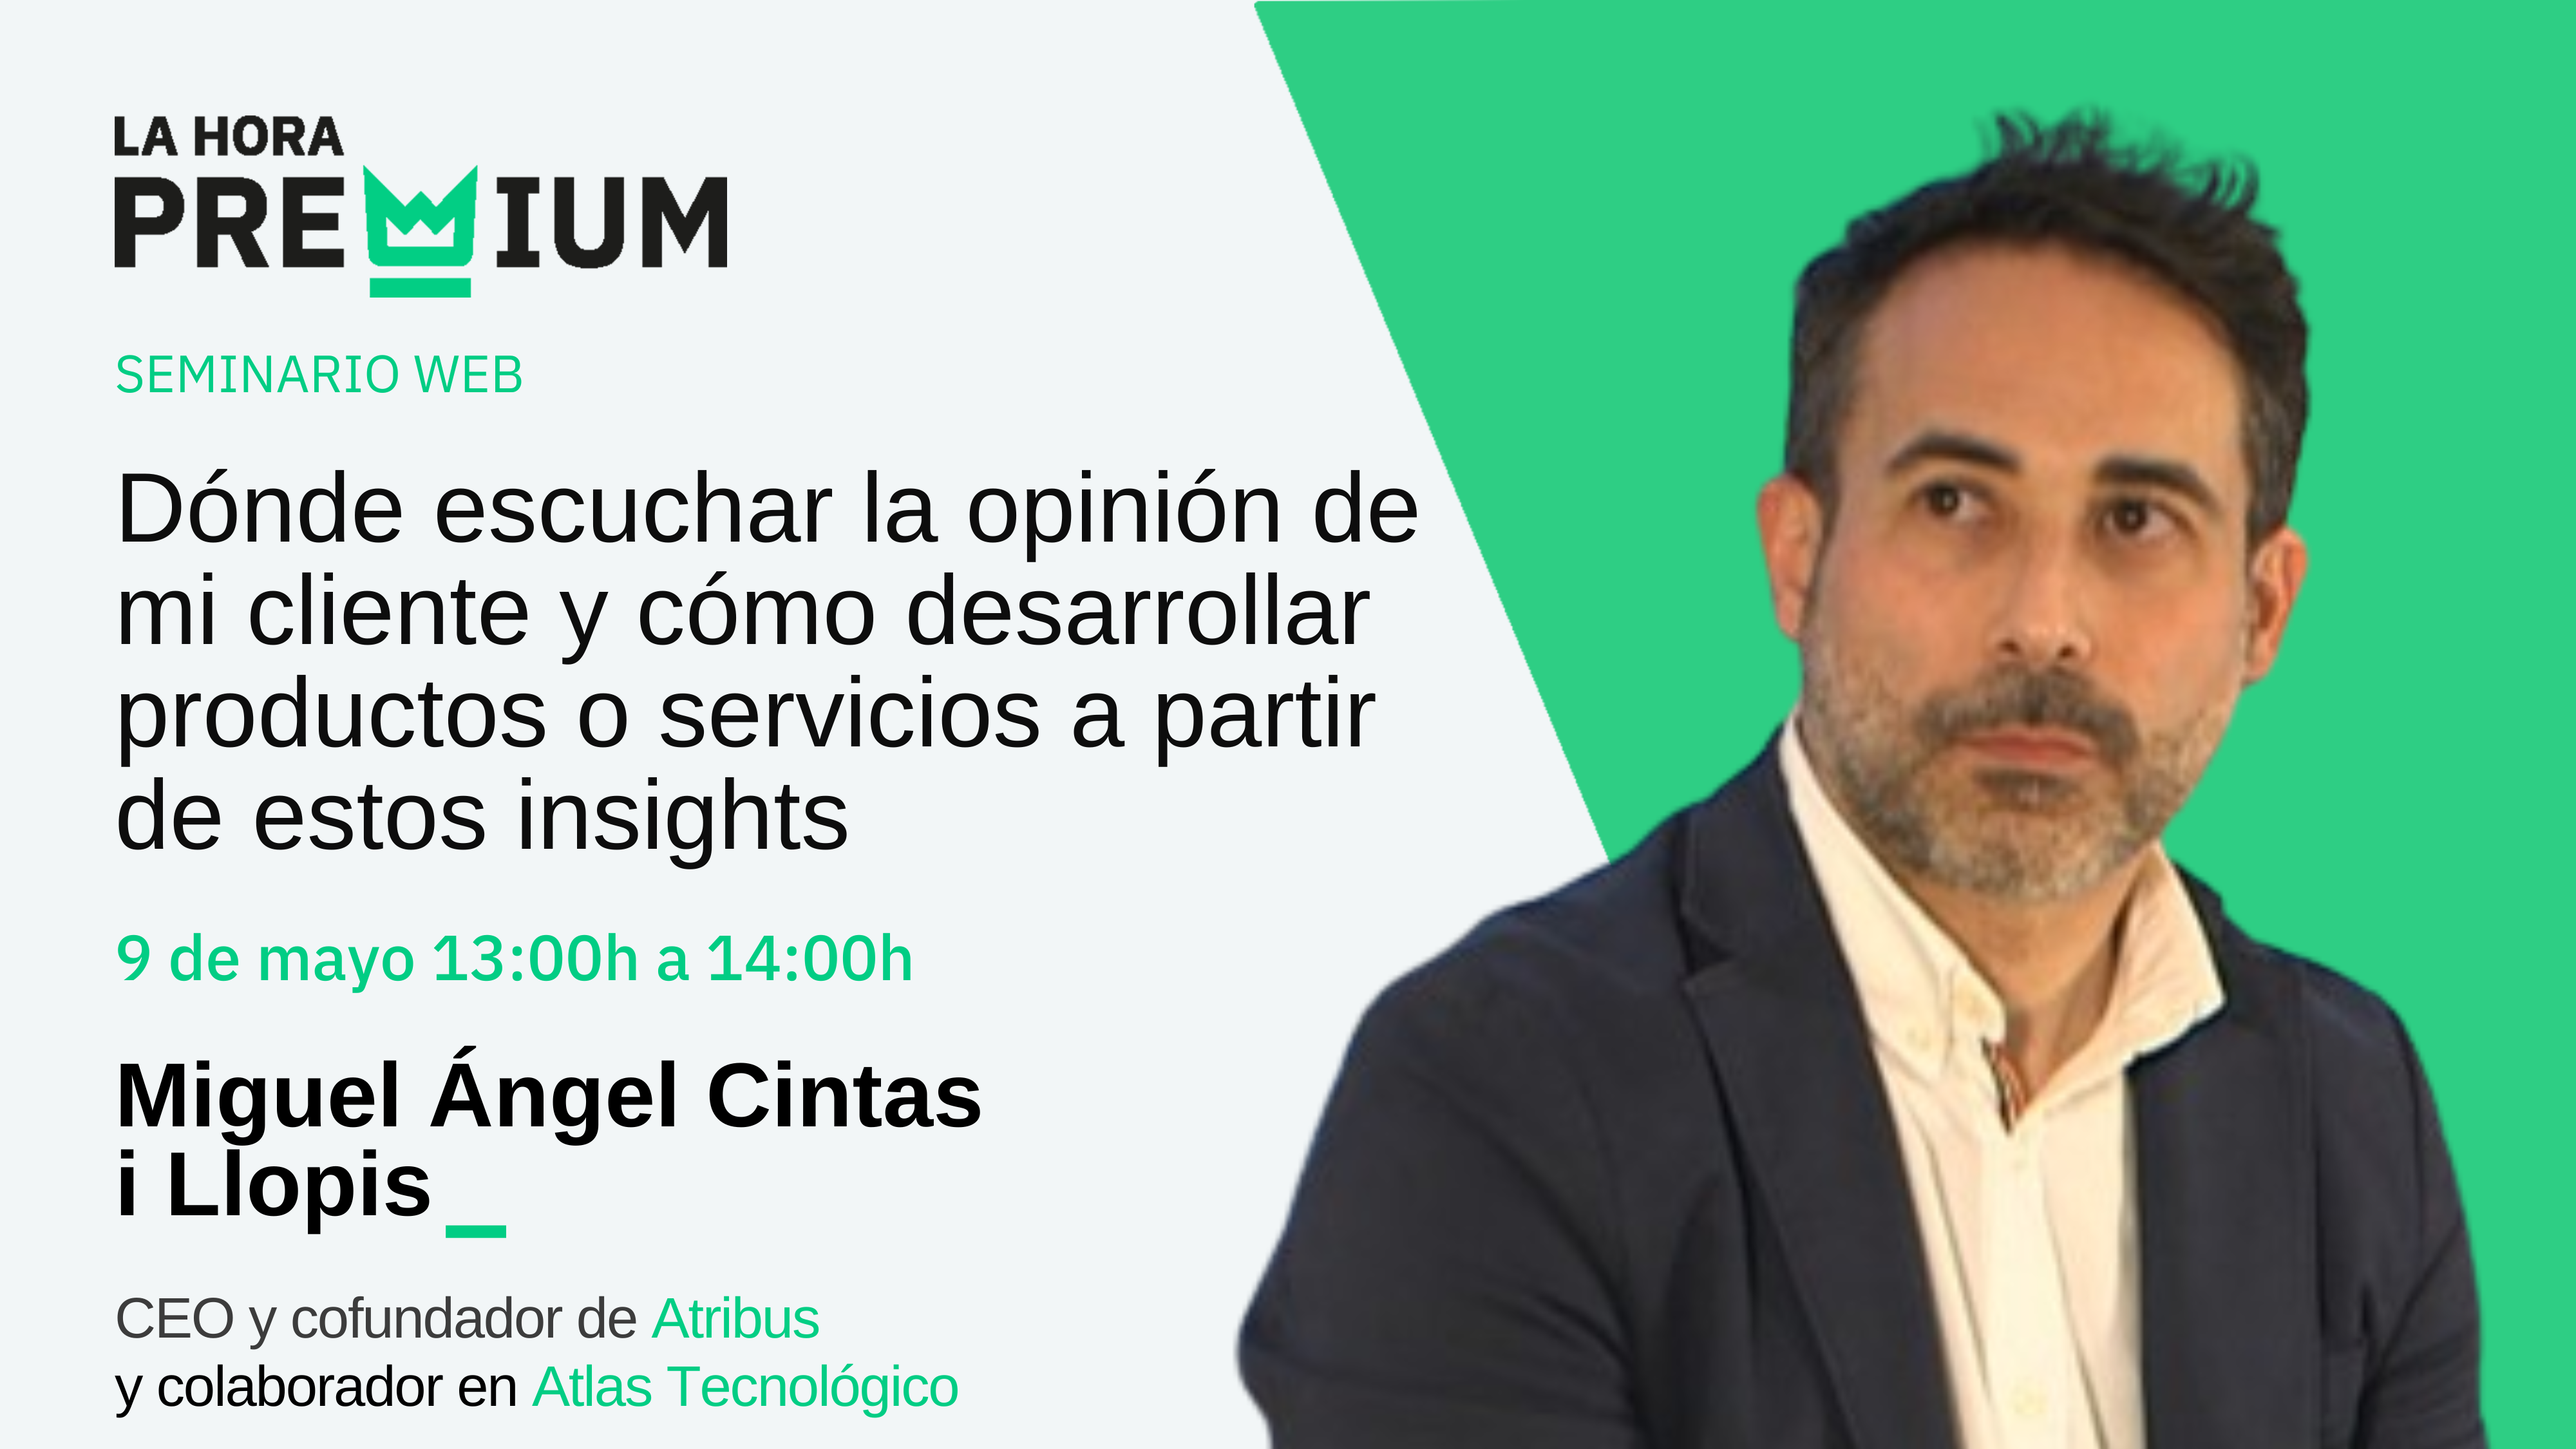 Miguel Ángel Cintas explicará en la Hora Premium dónde escuchar la opinión del cliente y para qué